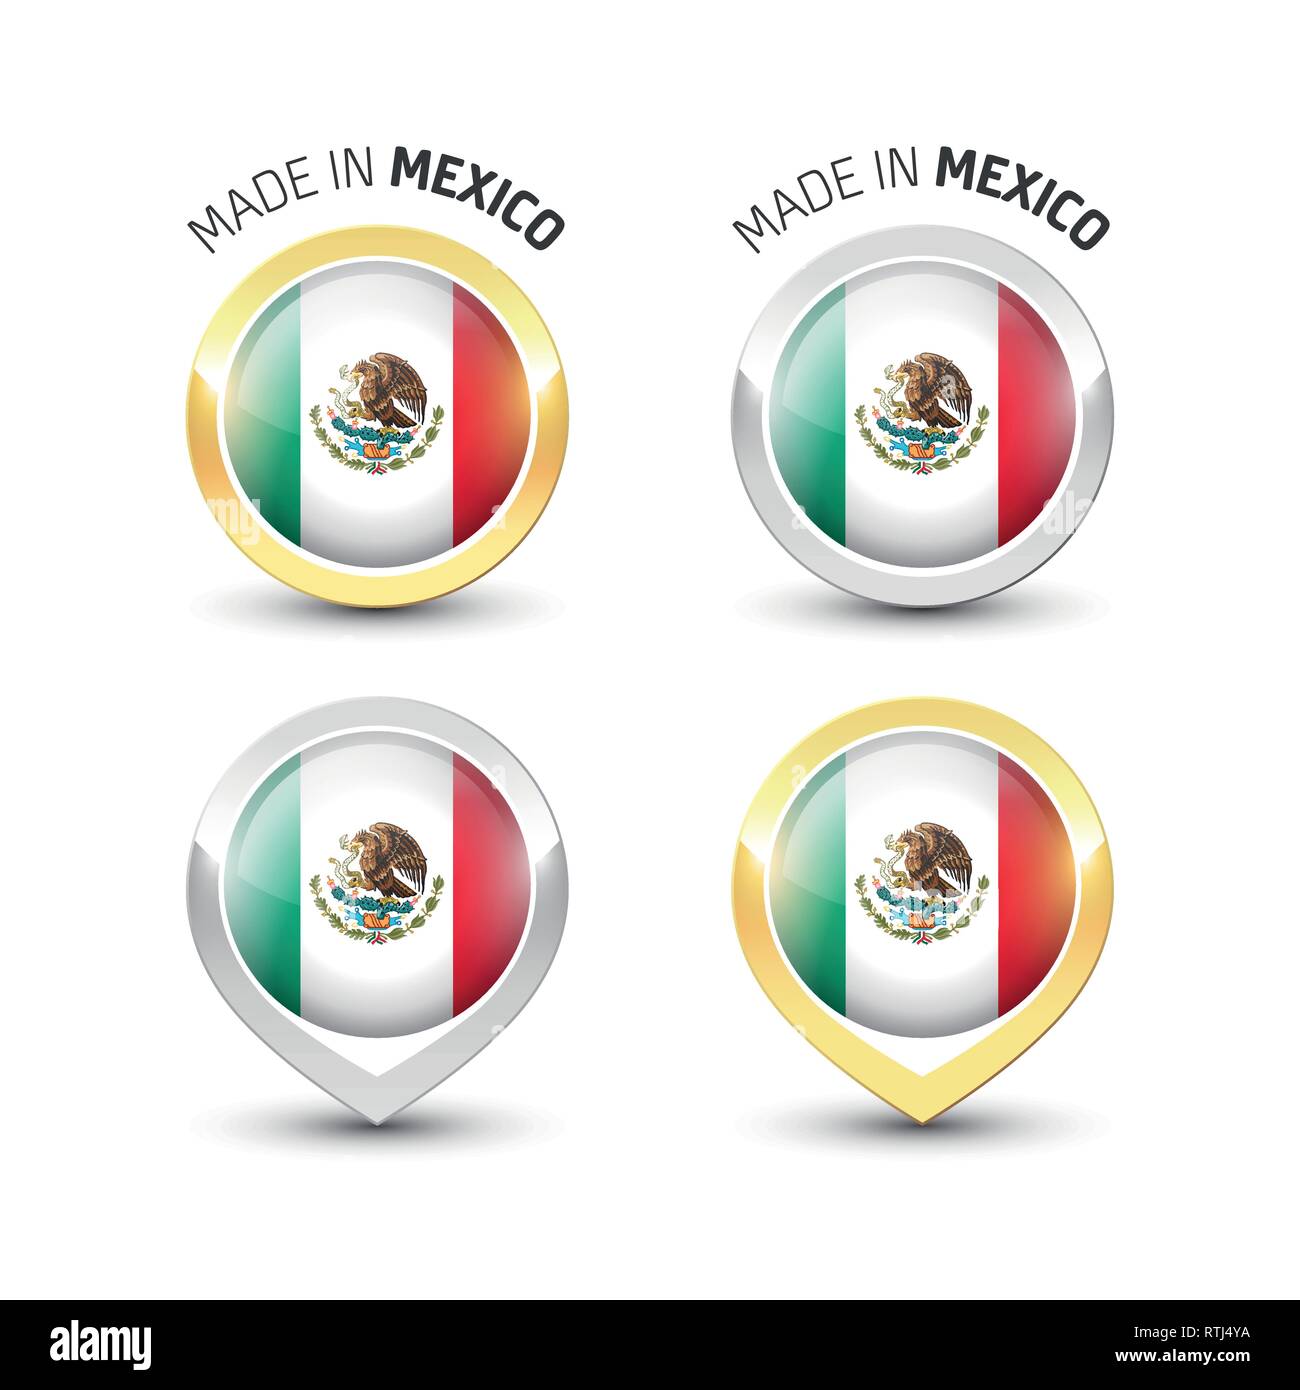 Realizzato in Messico - etichetta di garanzia con la bandiera messicana all'interno del turno oro e argento icone. Illustrazione Vettoriale